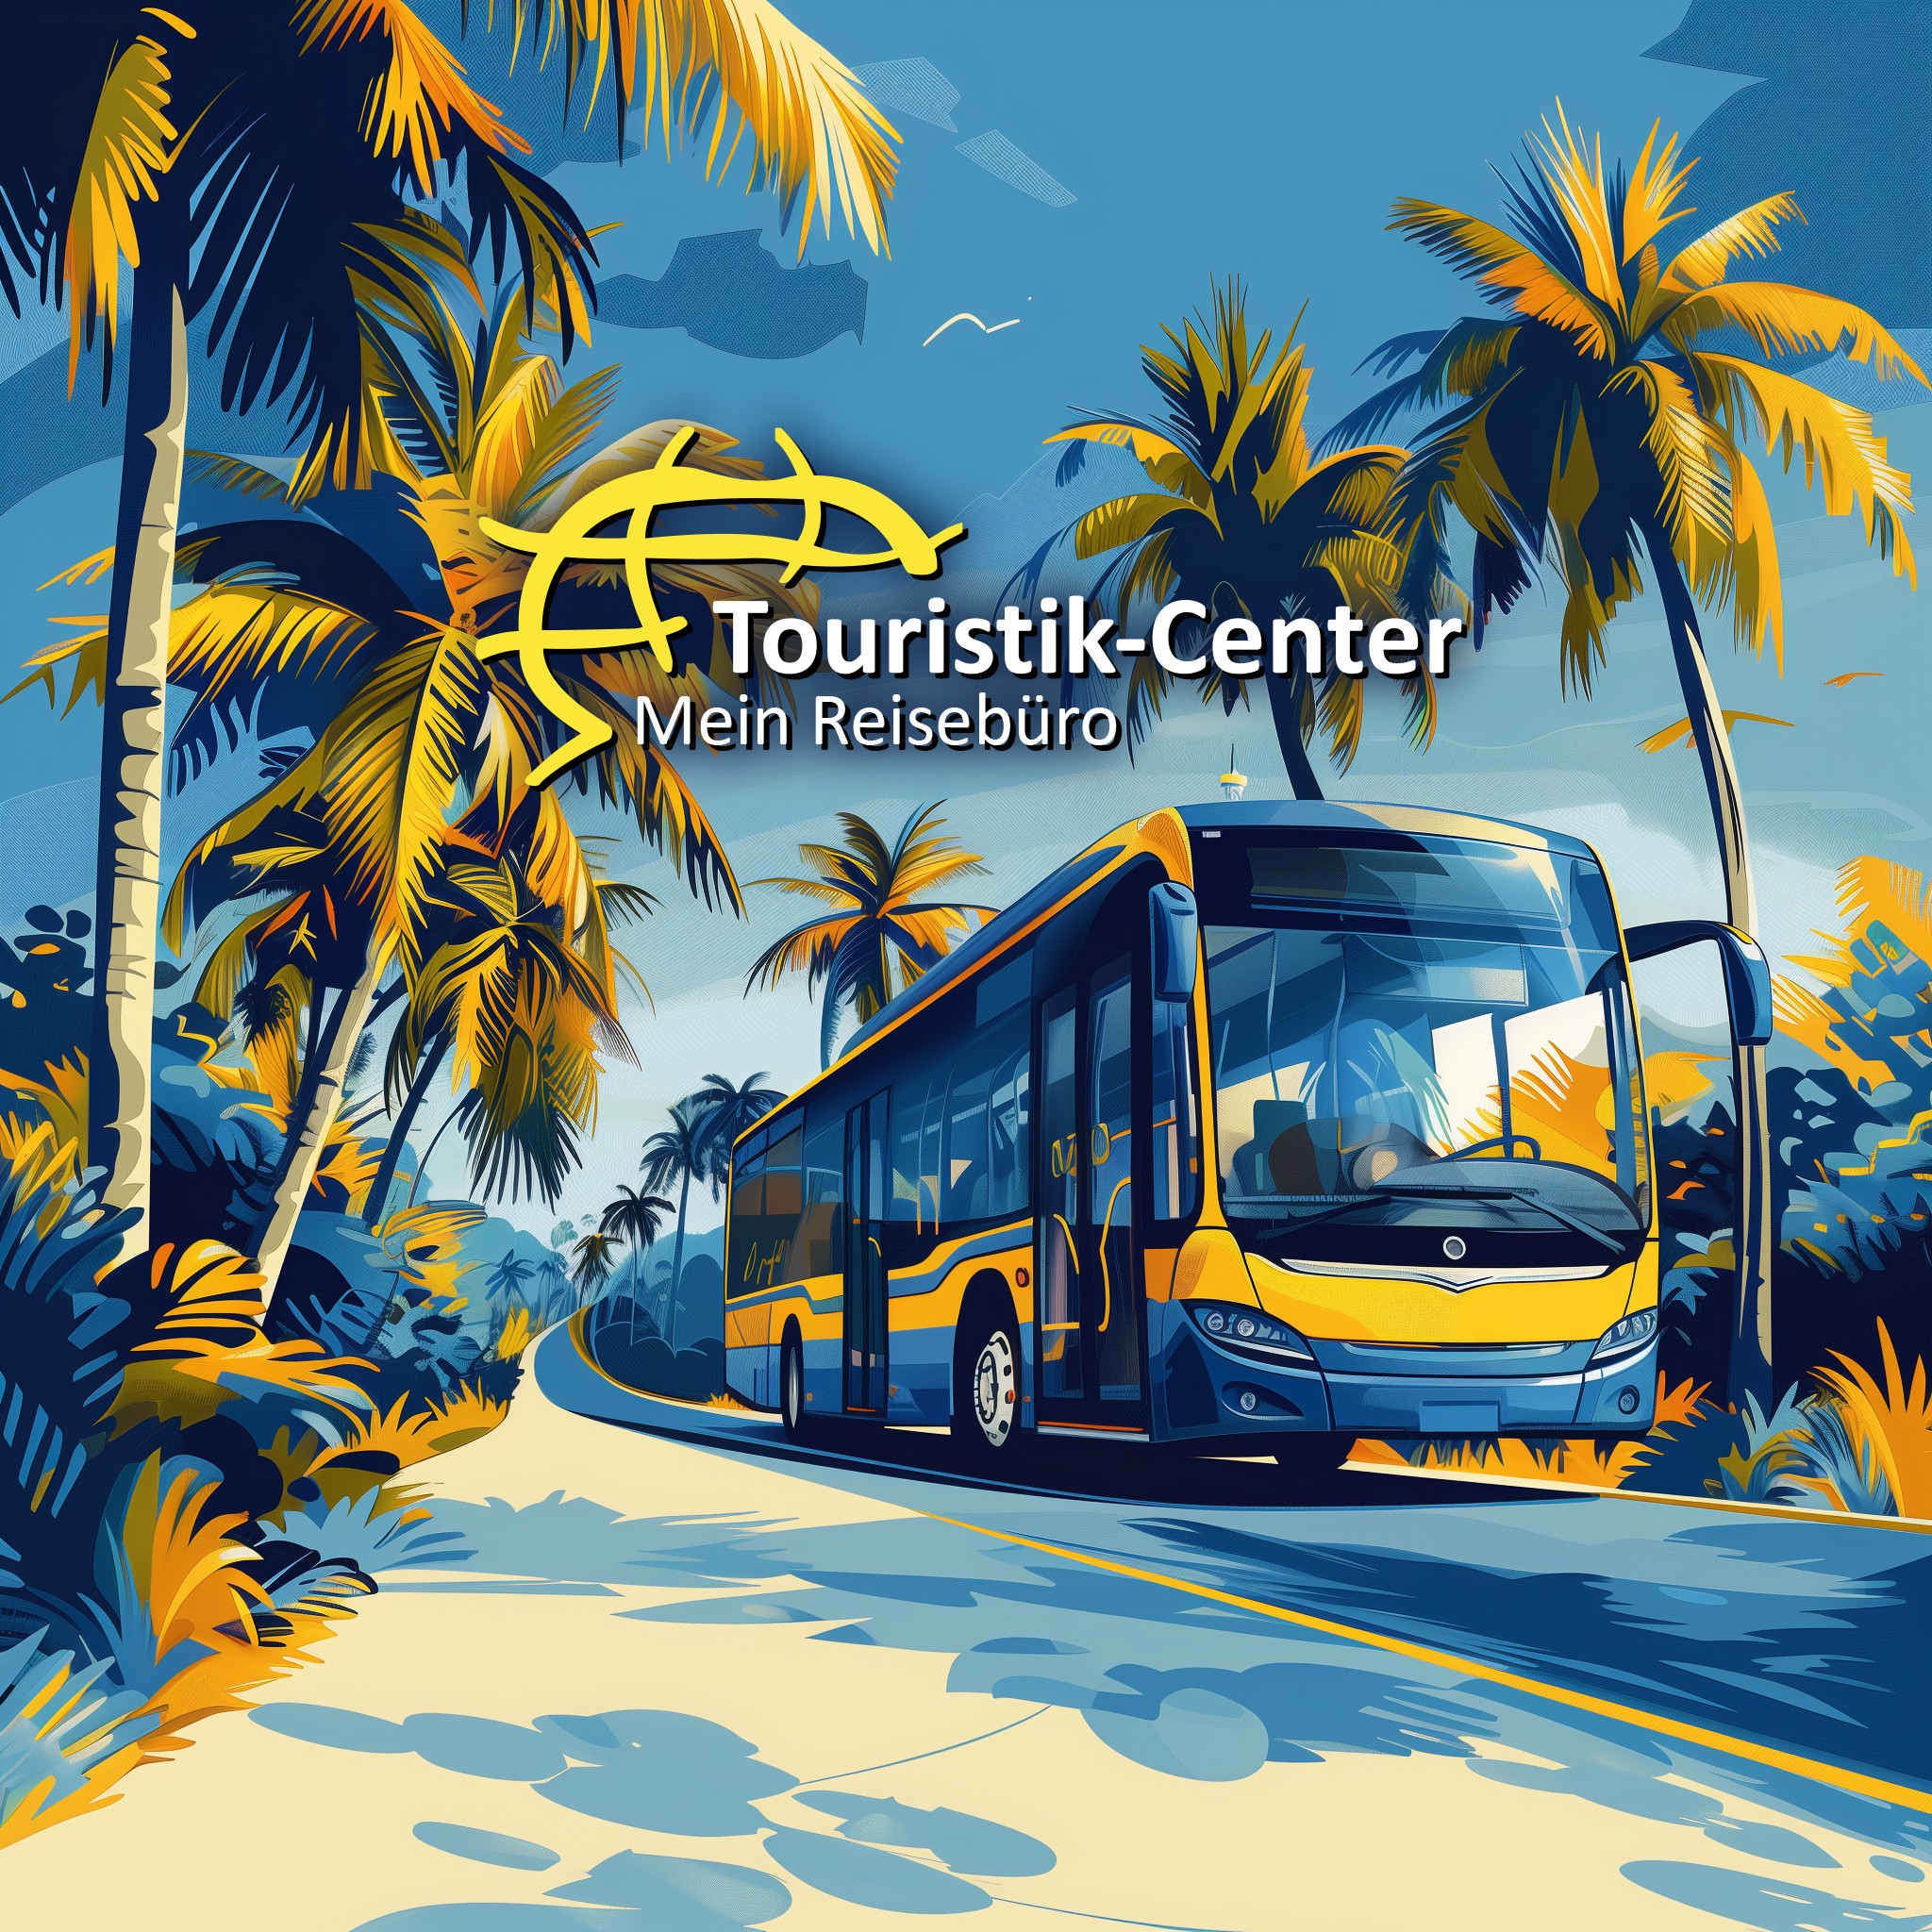 Ein stilistischer Bus als symbolisches Titelbild für das neue Transfer-Ticket-Plugin beim Touristik-Center.